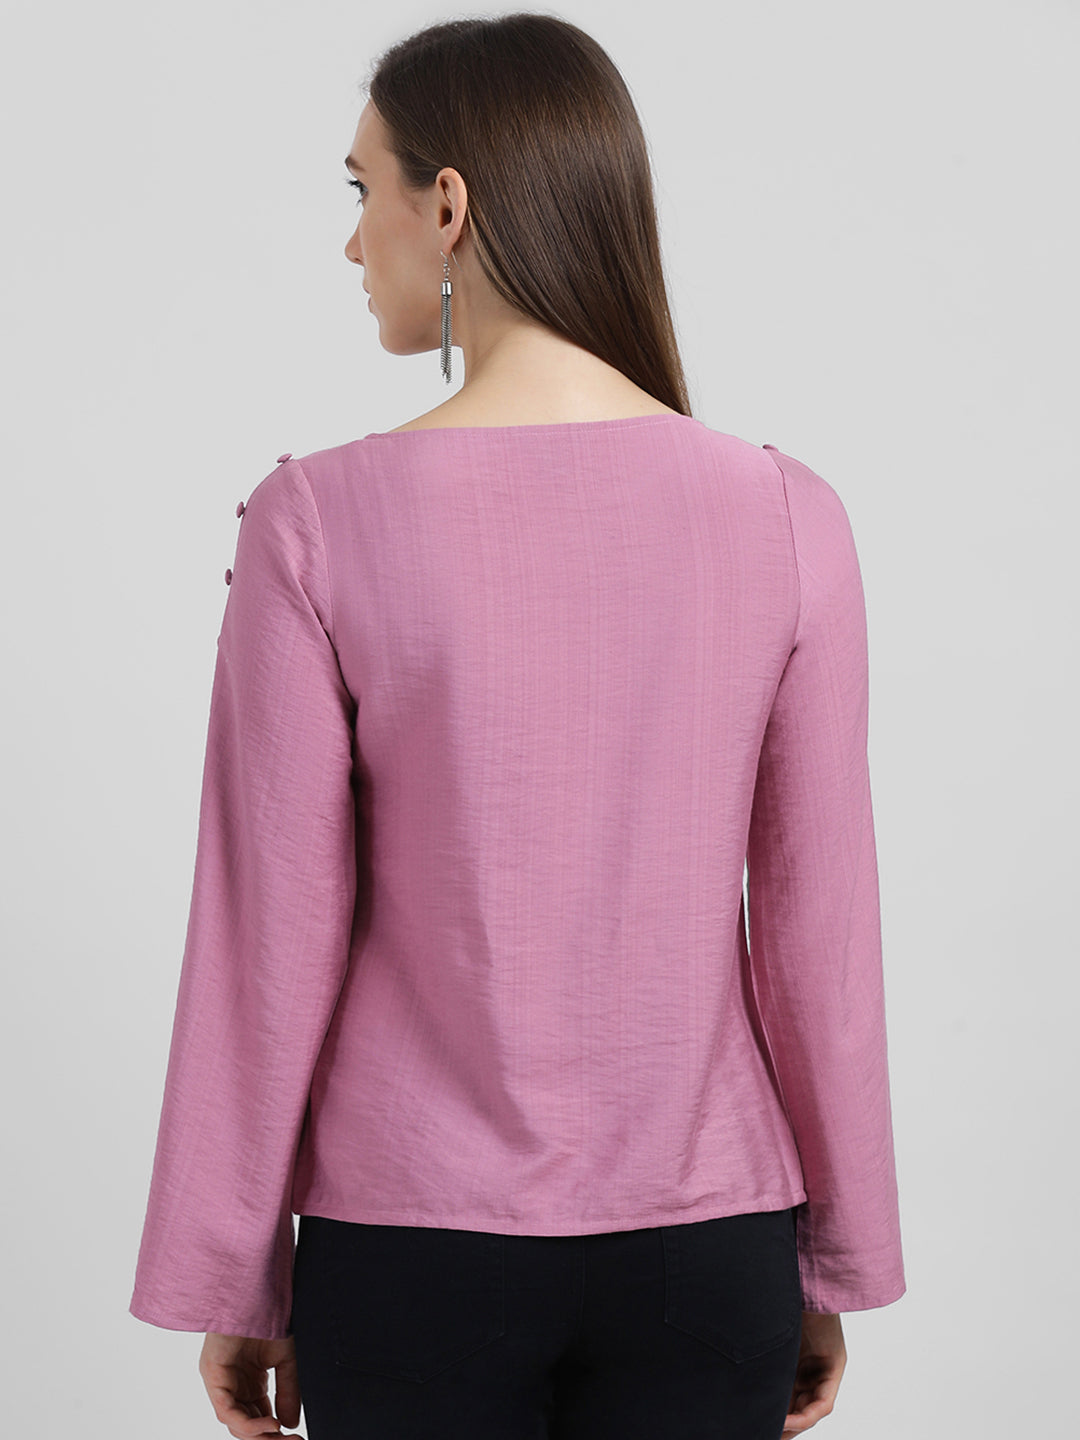 Zink London Women's Pink Solid Regular Top